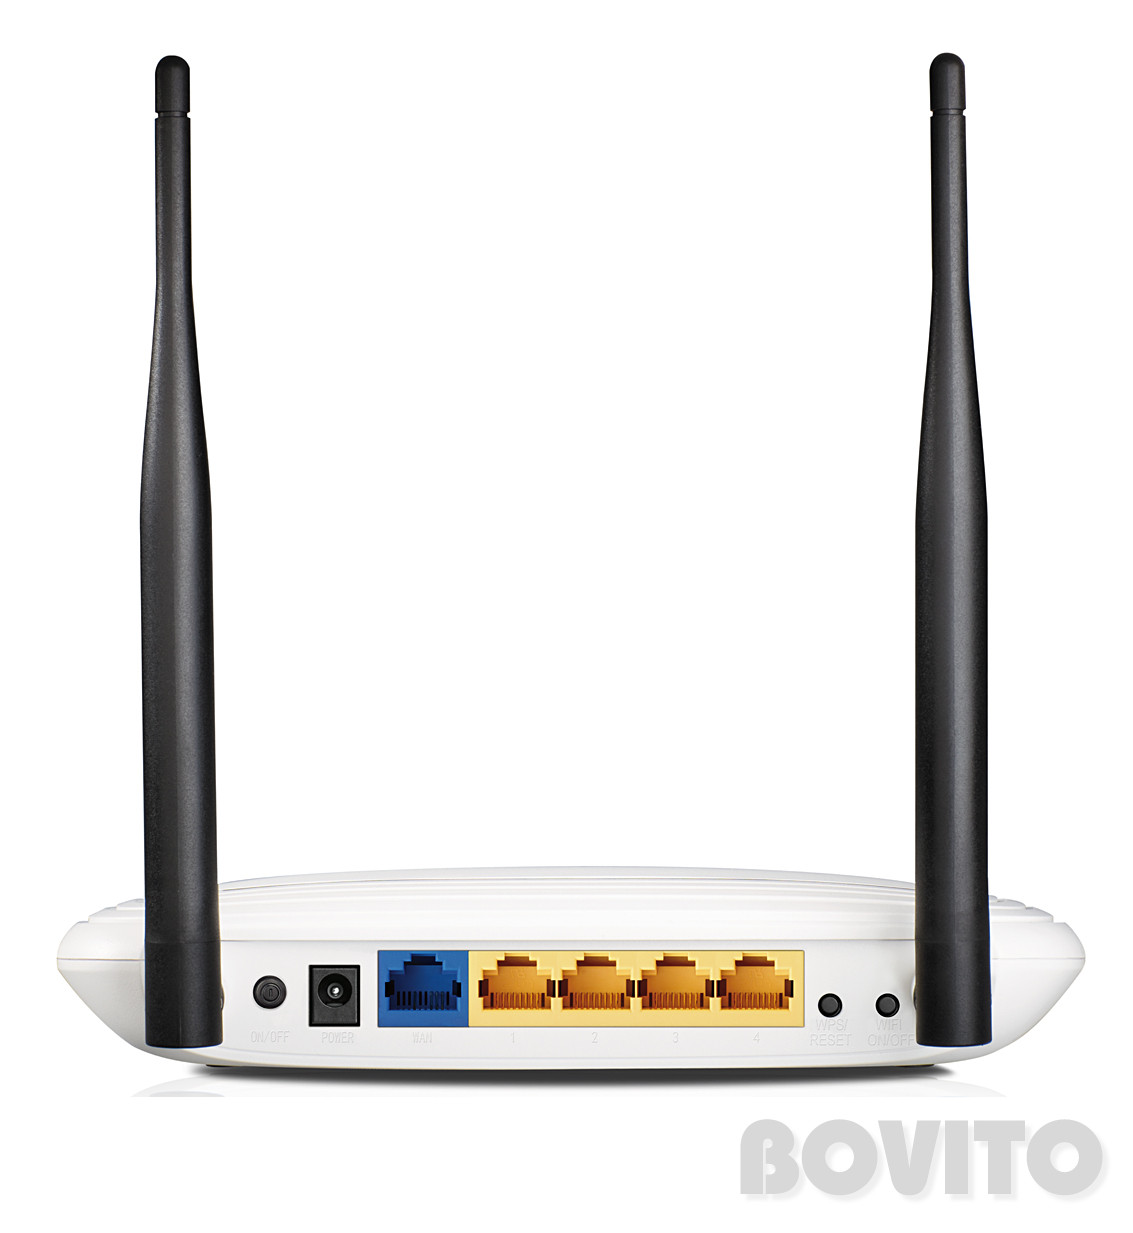 tp-link tl-wr841n dd-wrt openvpn router